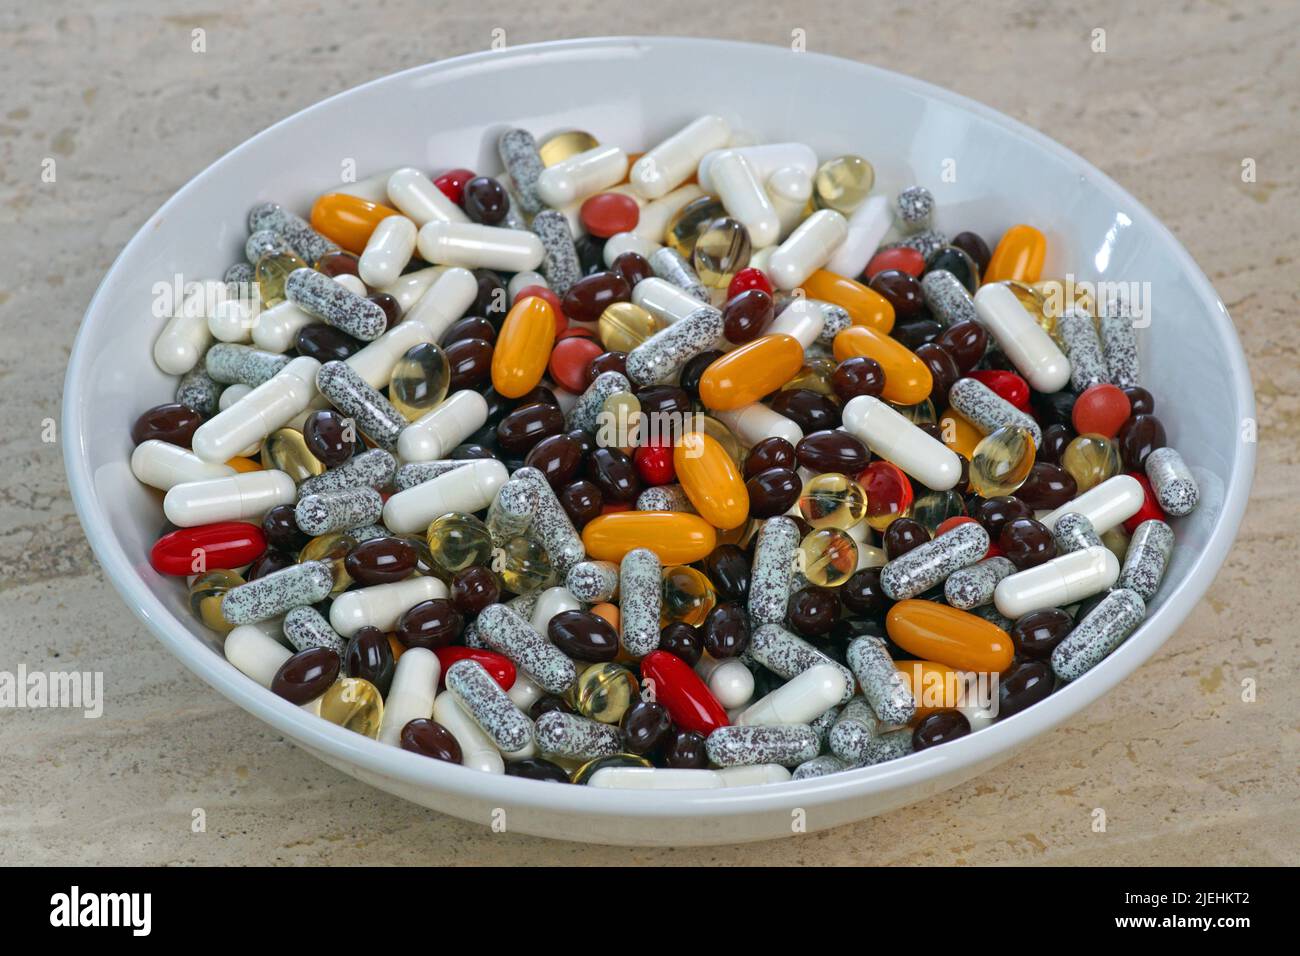 Viele verschiedene Tabletten, Tablettensucht, süchtig, Stock Photo